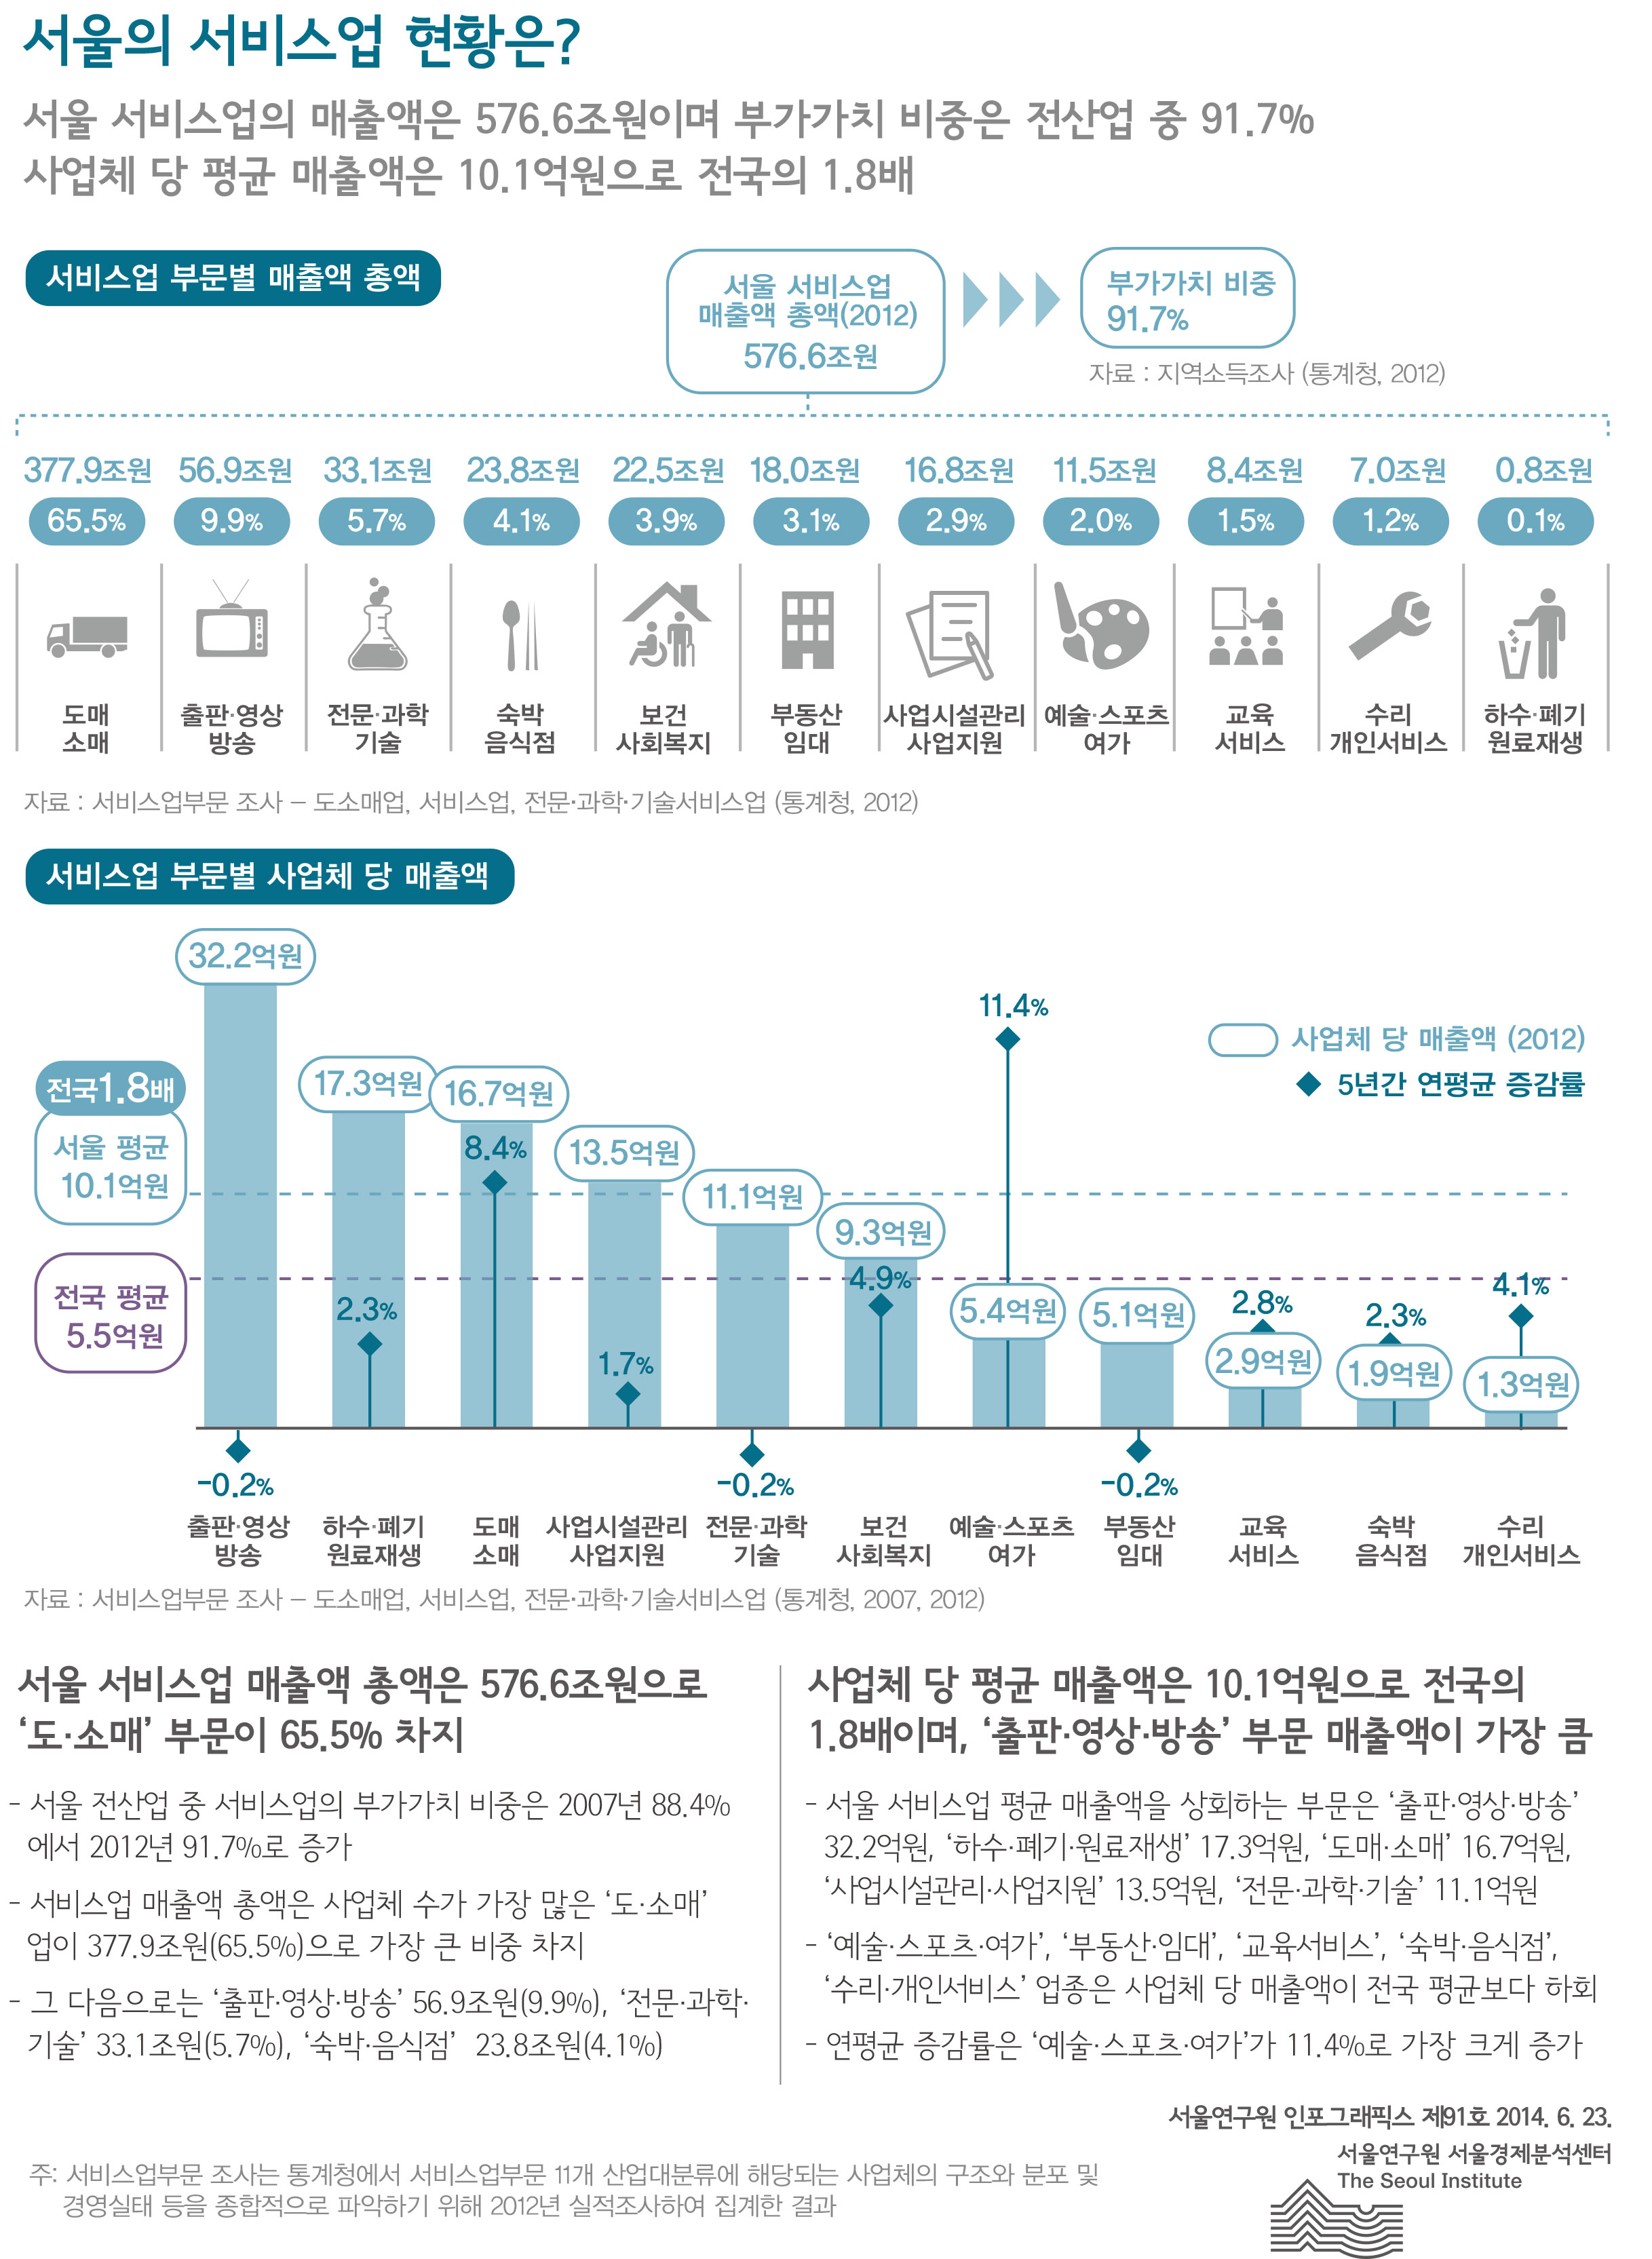 서울의 서비스업 현황은? 서울인포그래픽스 제91호 2014년 6월 23일 서울 서비스업의 매출액은 576.6조원이며 부가가치 비중은 전산업 중 91.7% 사업체 당 평균 매출액은 10.1억원으로 전국의 1.8배로 정리될 수 있습니다. 인포그래픽으로 제공되는 그래픽은 하단에 표로 자세히 제공됩니다.